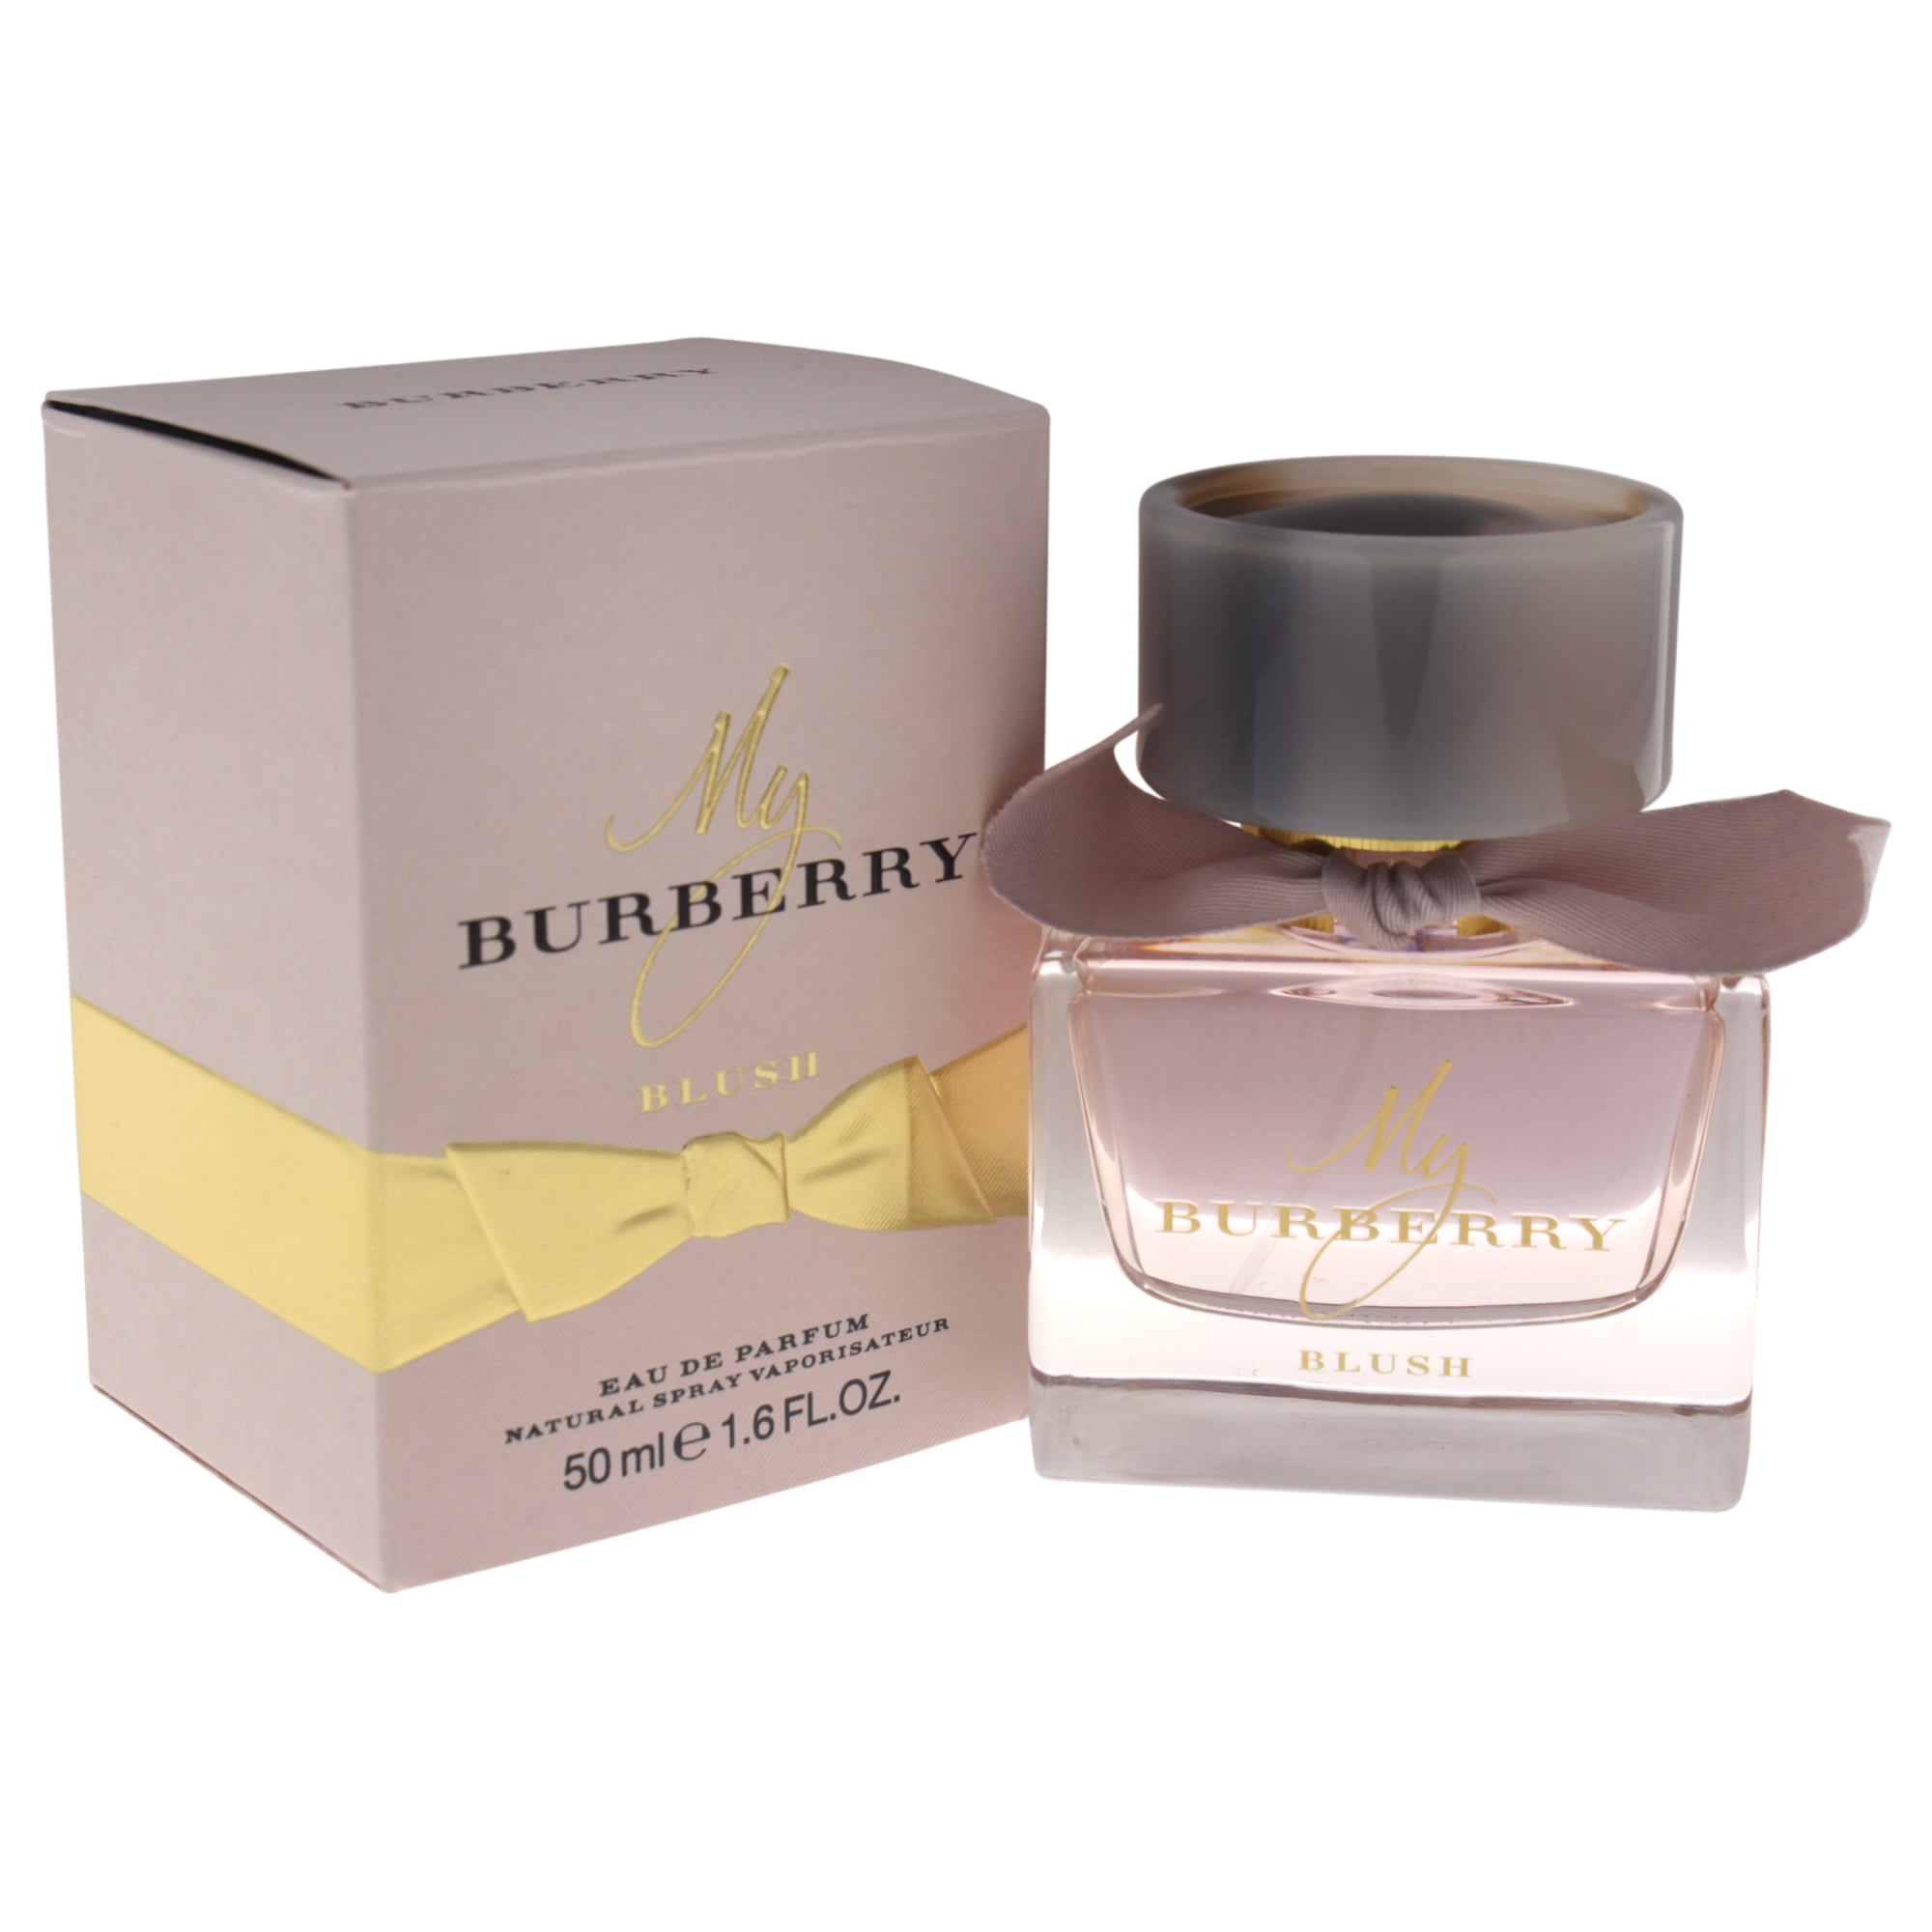 Burberry Burberry Blush Eau de Perfume for 1.6 Oz - Walmart.com